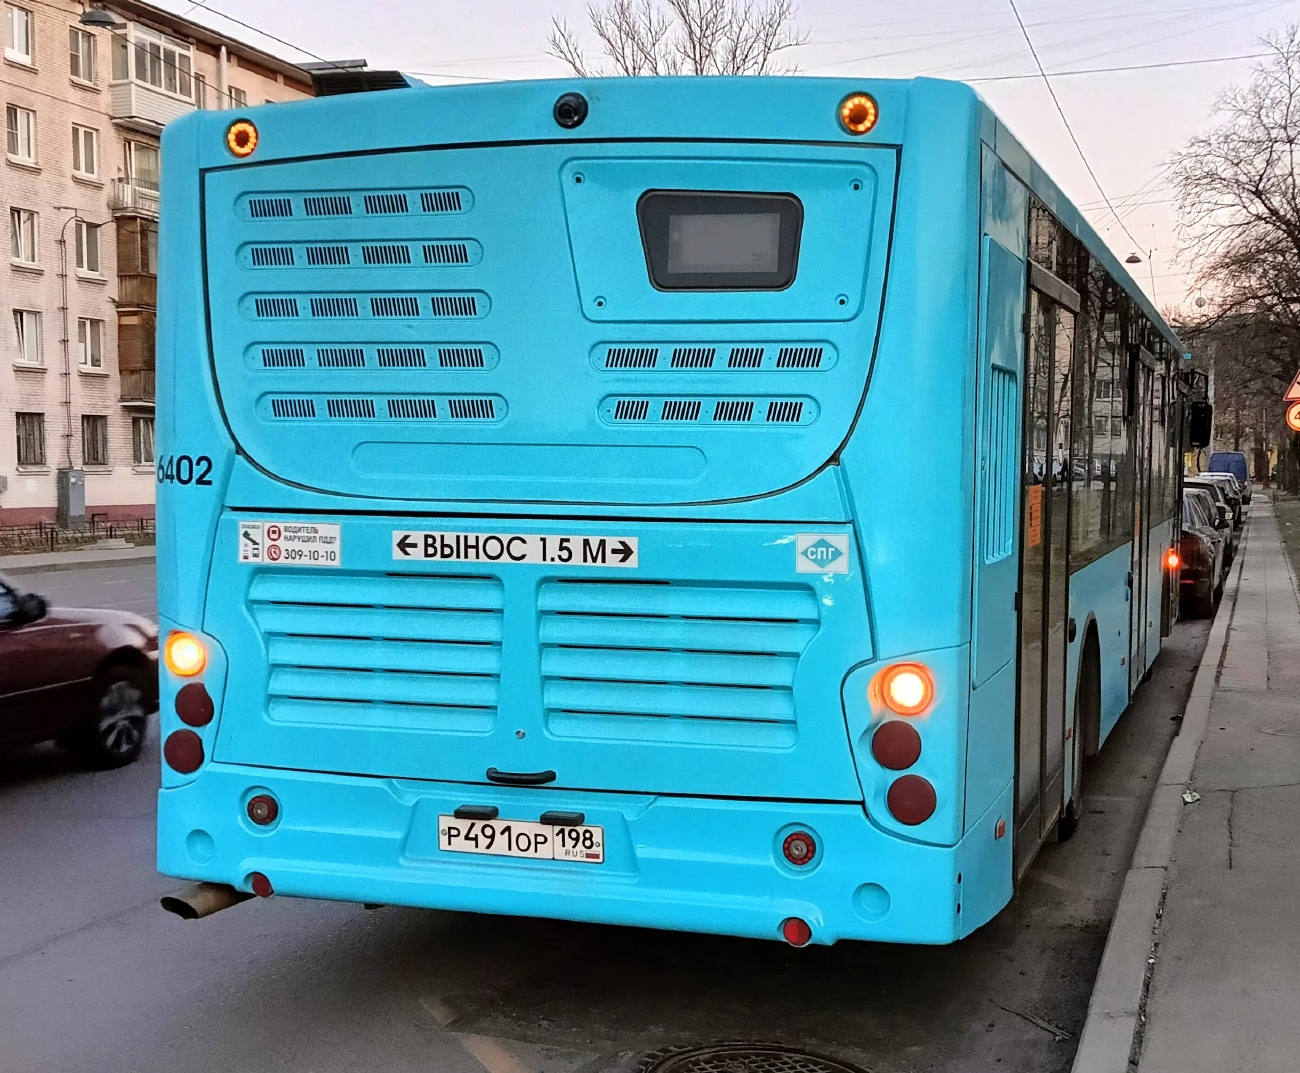 Sankt Peterburgas, Volgabus-5270.G2 (LNG) Nr. 6402